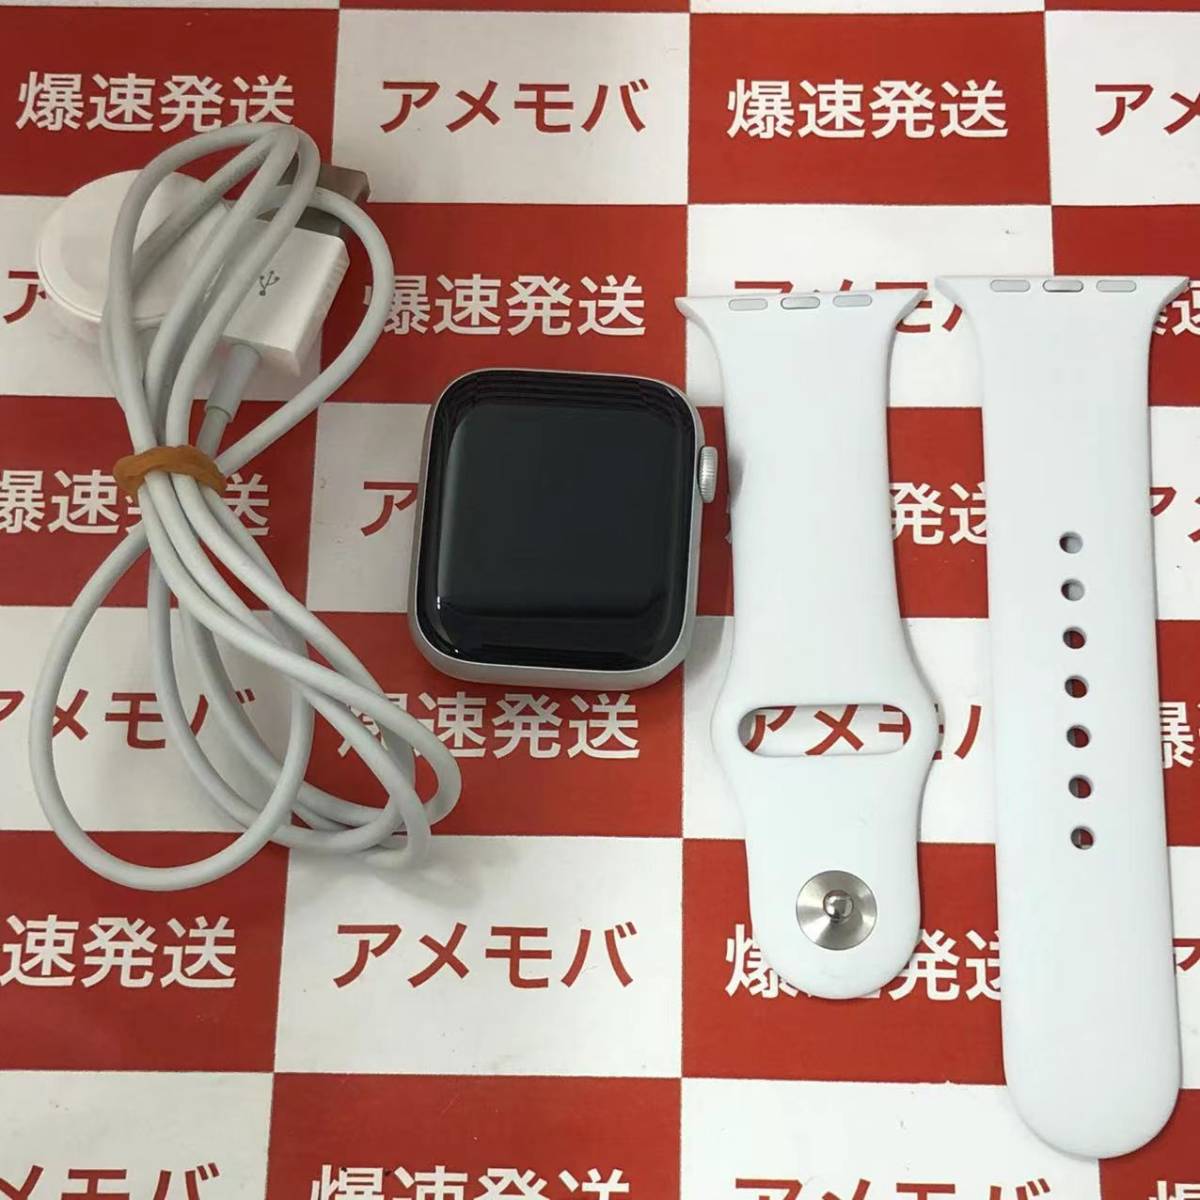 日本正規取扱商品 Apple MWVD2J/A 44mm GPS 5 Series Watch その他